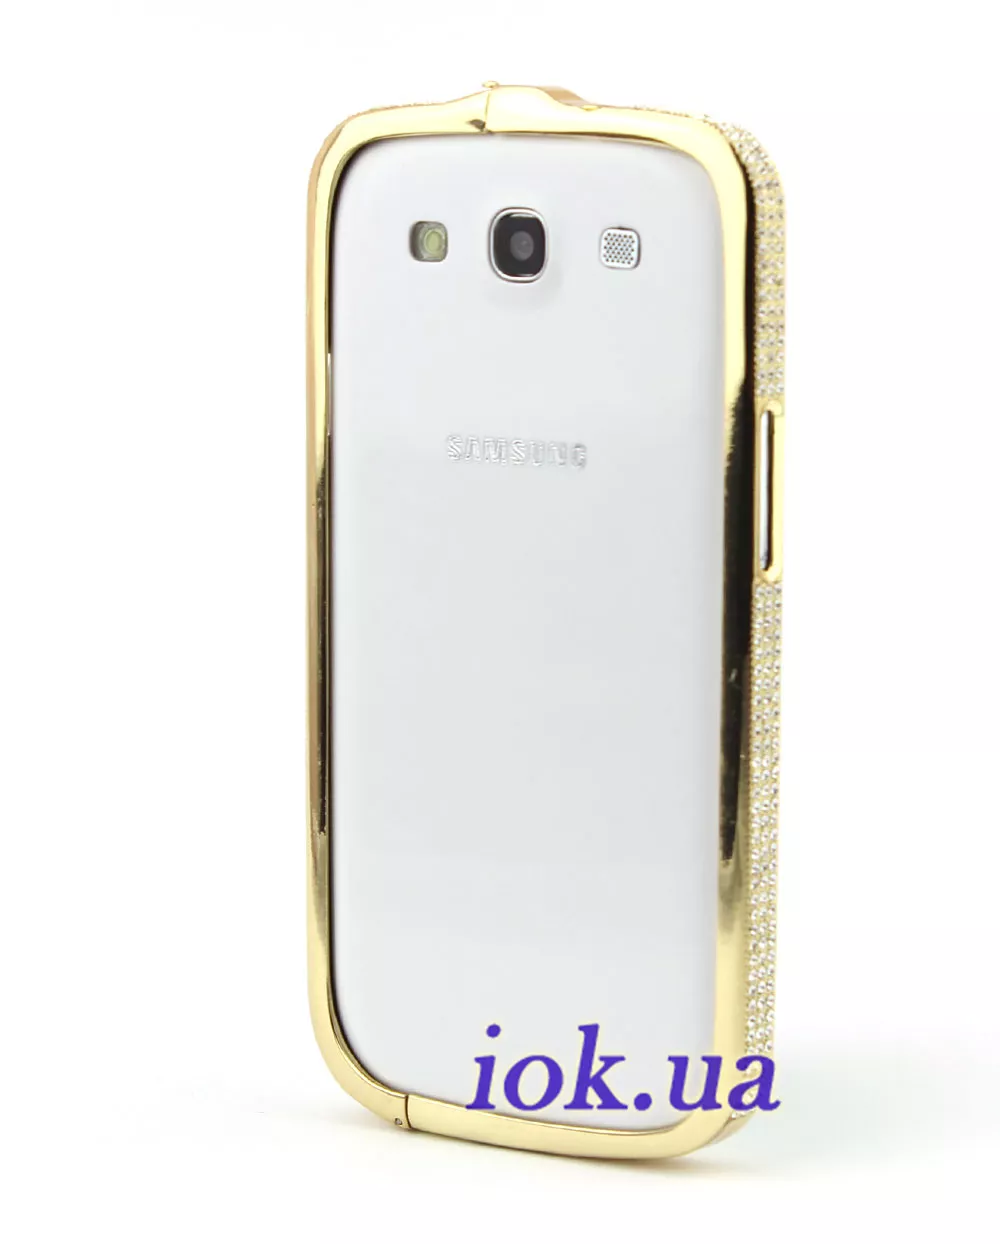 Золотой бампер в стразах для Galaxy S3